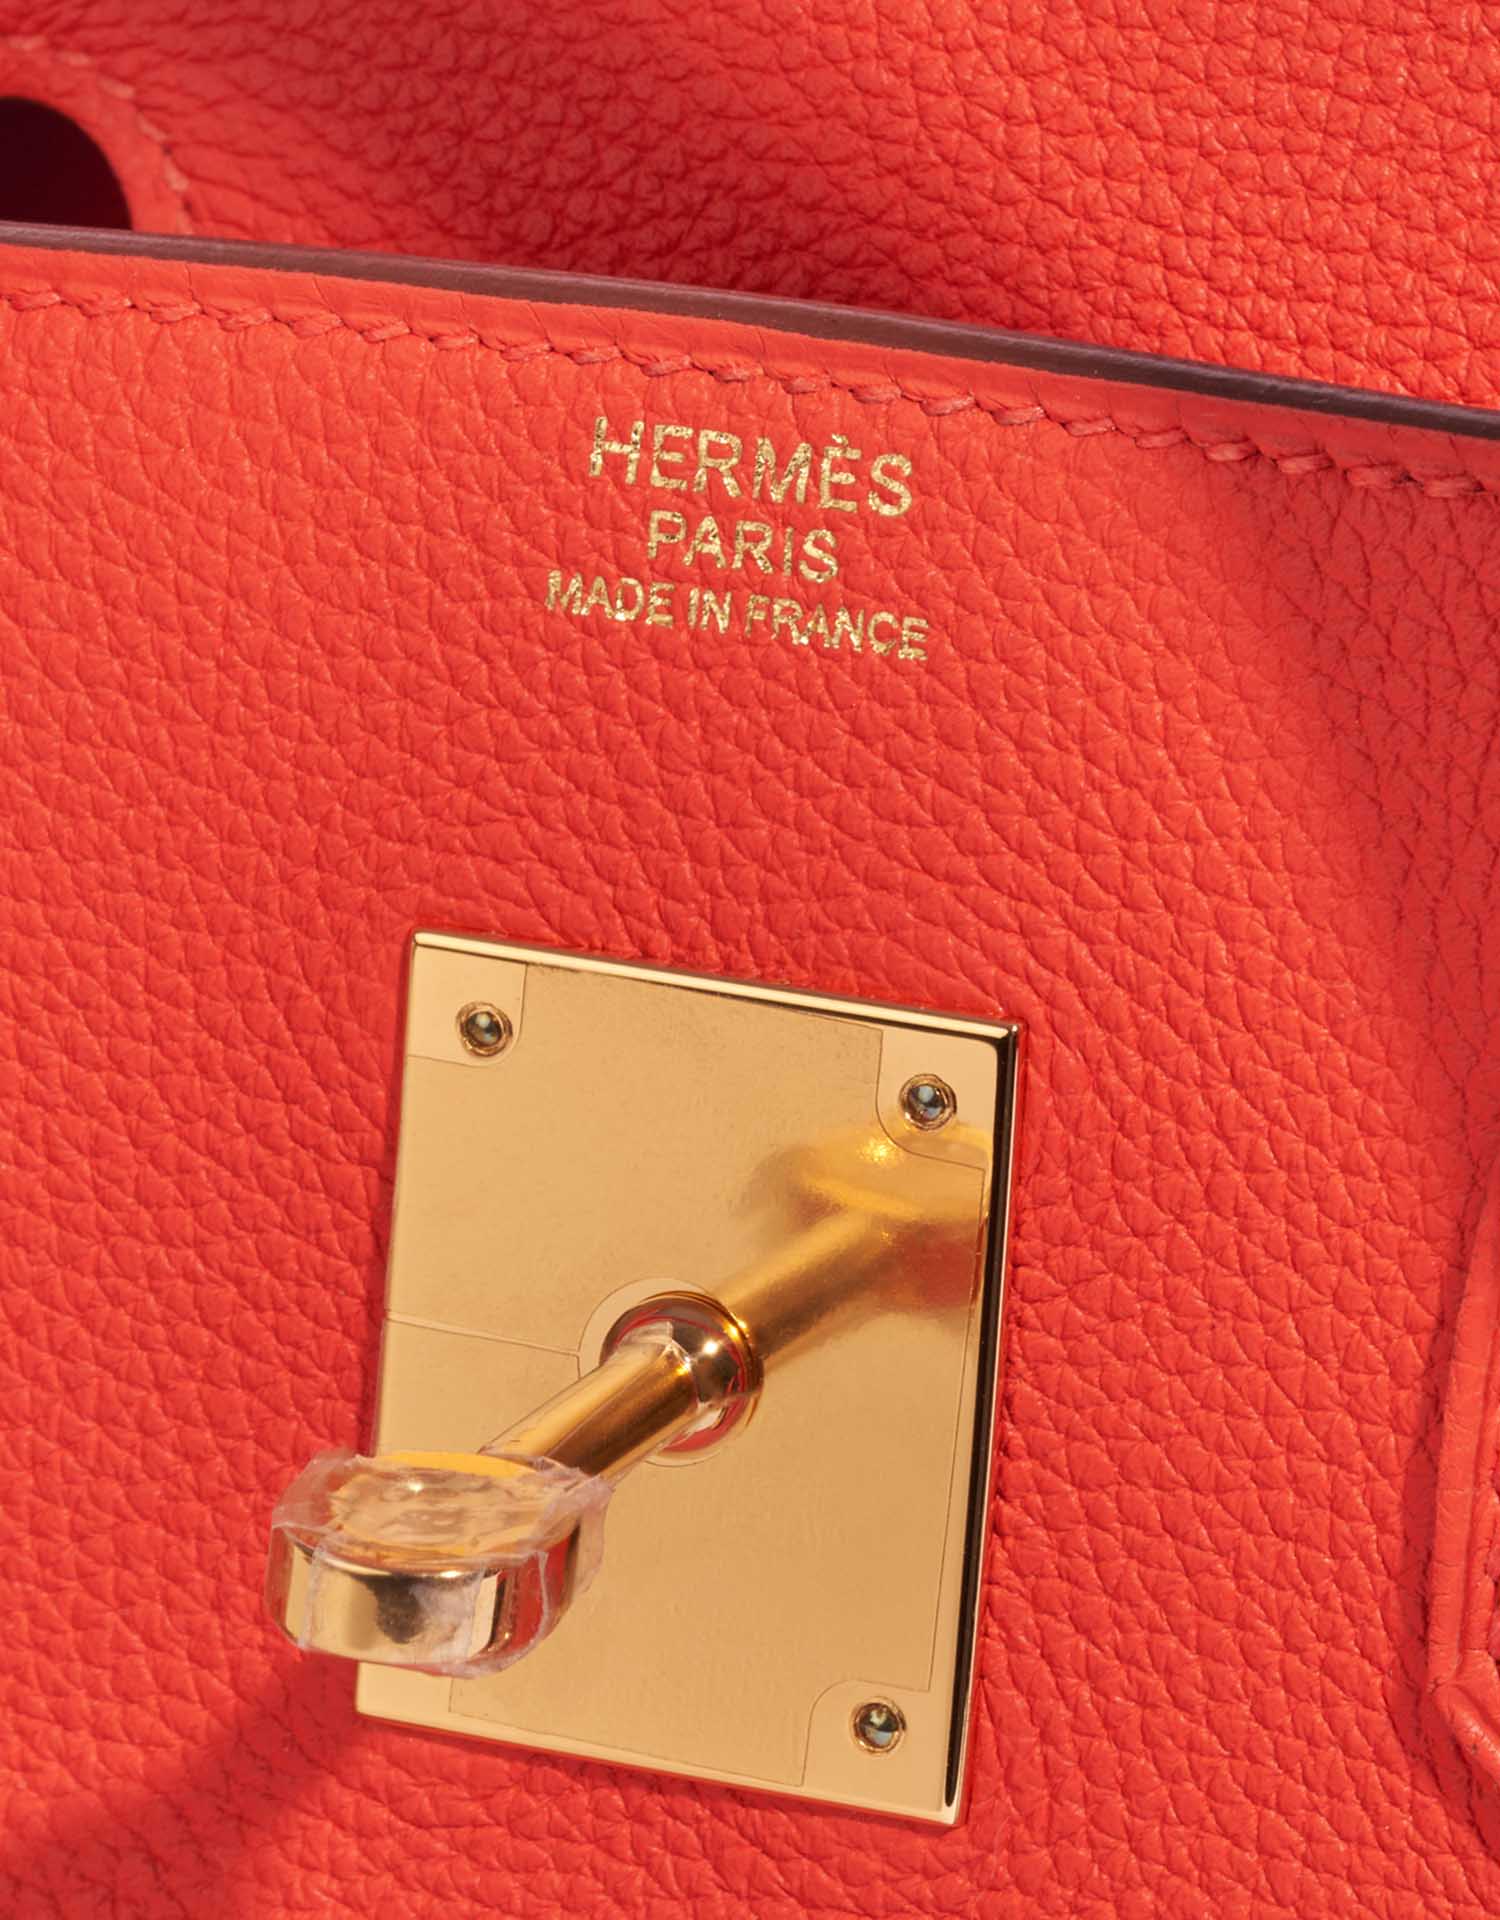 Hermès Birkin 30 Bi-Color Special Order Togo Leather PHW Bag